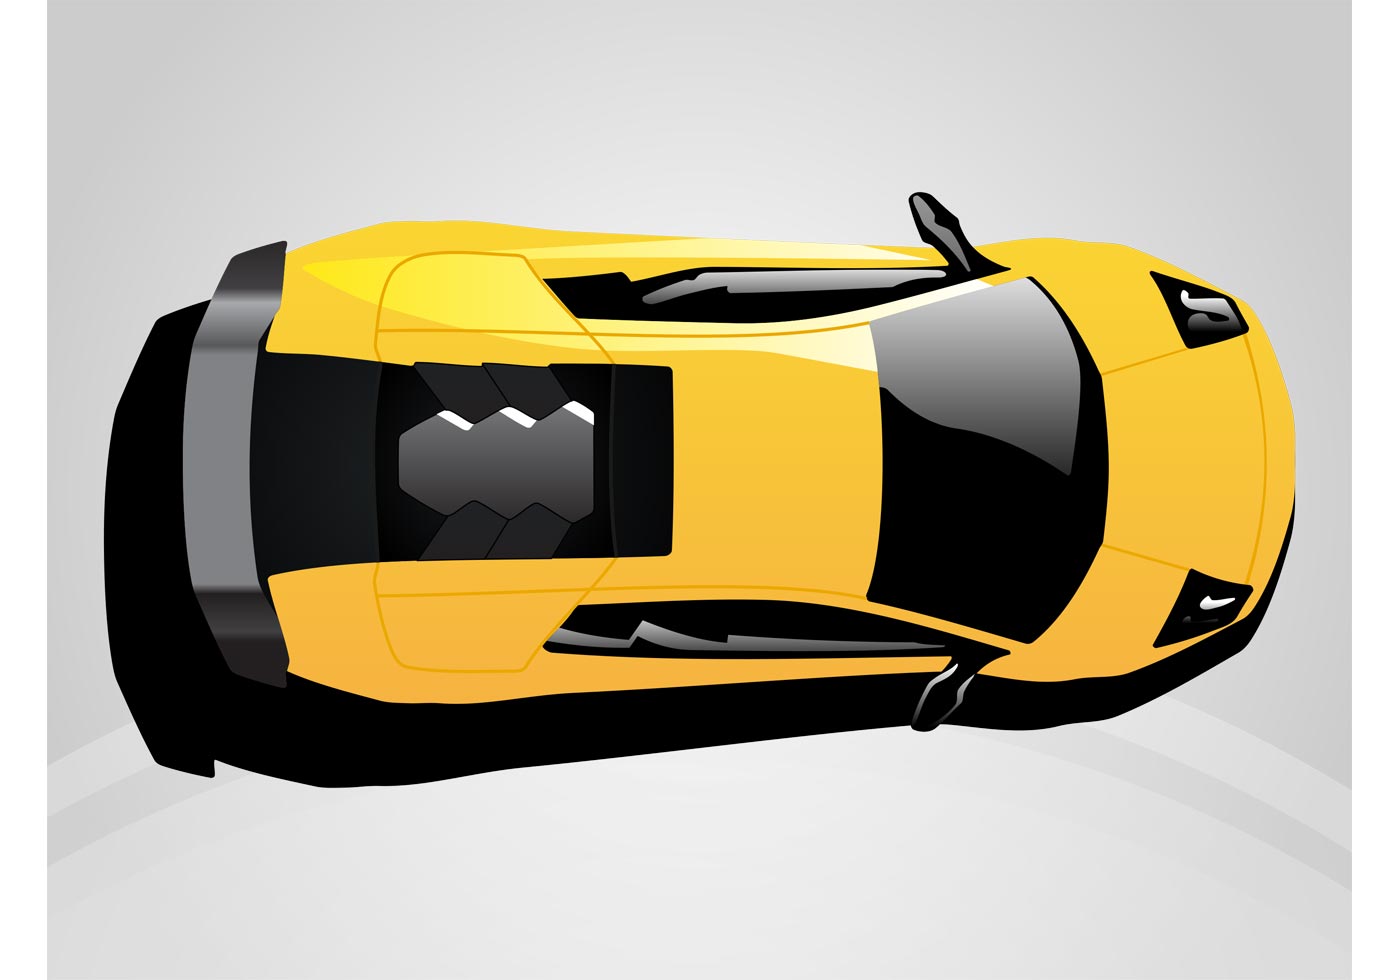 Lamborghini Murcielago - Download Free Vectors, Clipart ...